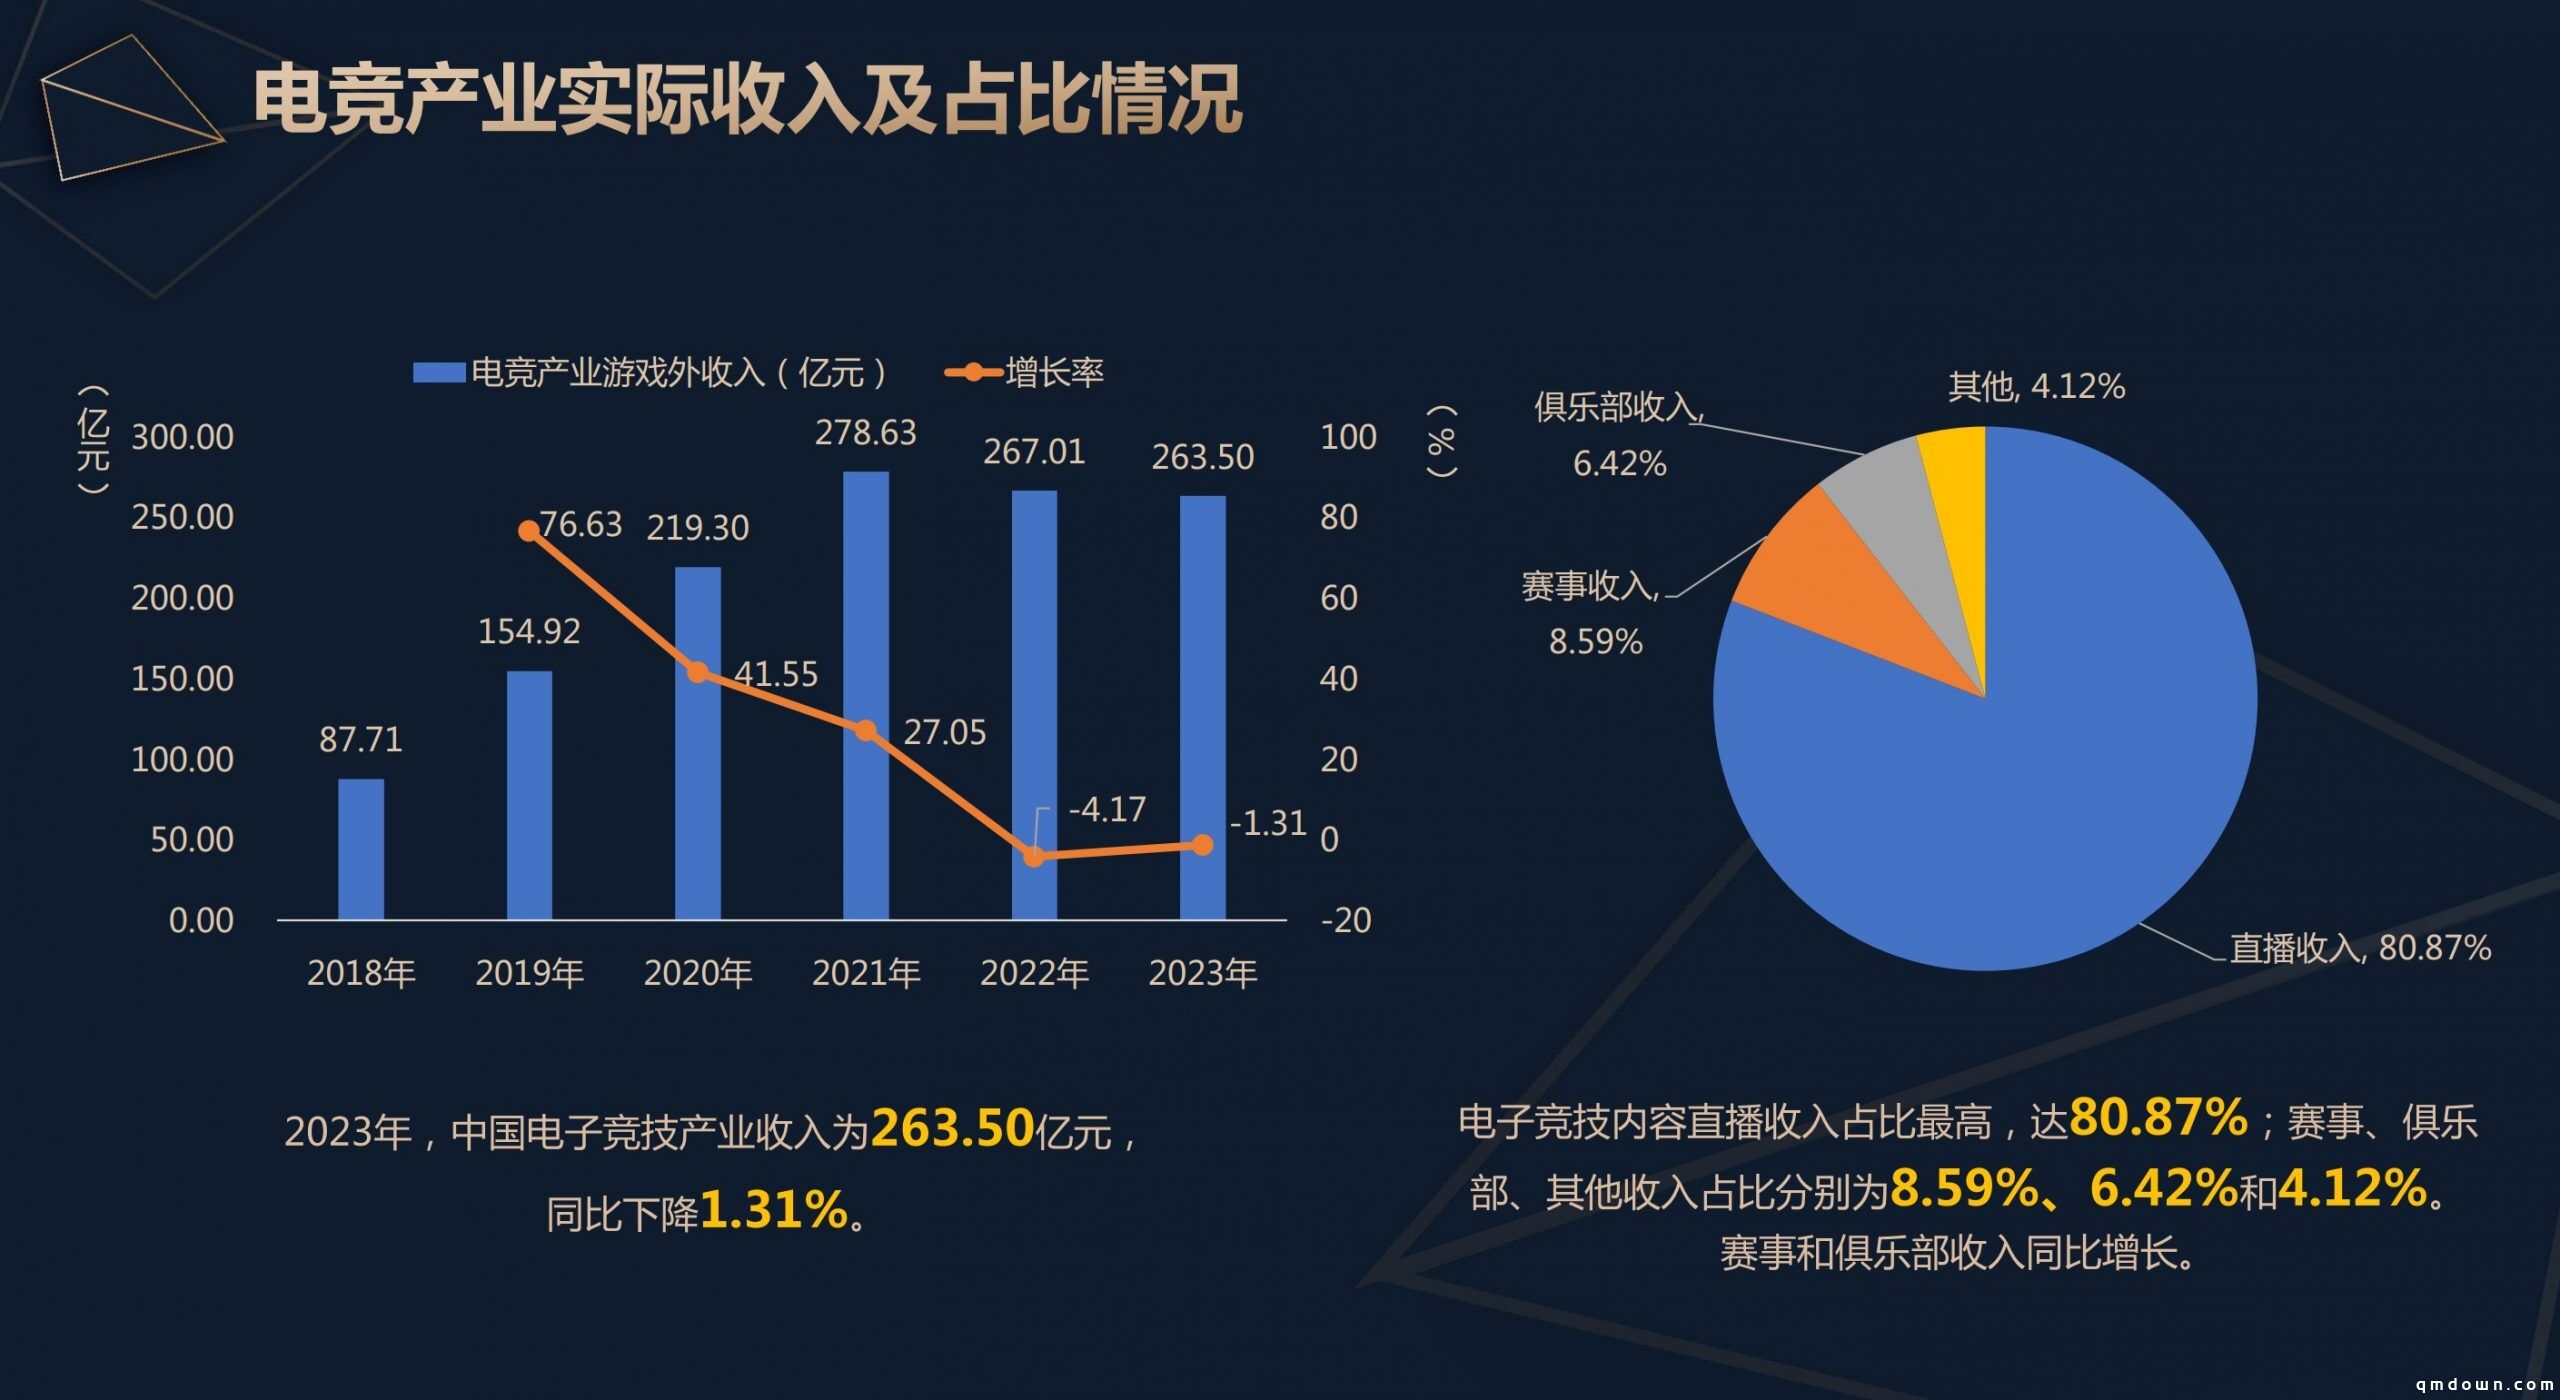 《2023年度中国电竞产业报告》正式发布